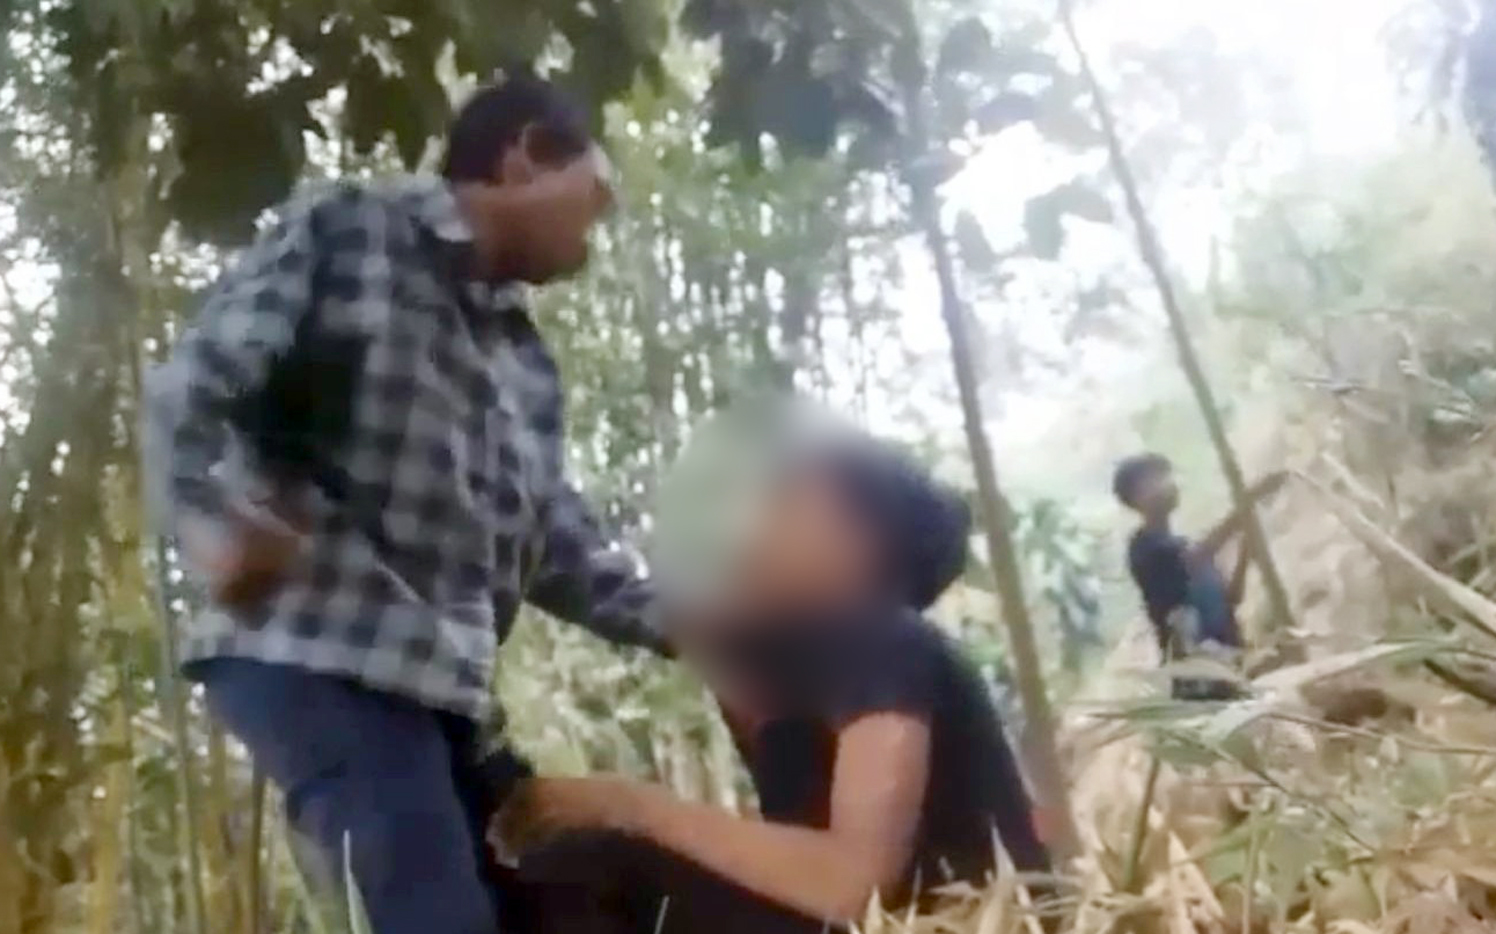 Camat Cigugur Berkoordinasi dengan Polisi Terkait Video Viral Perundungan; Lokasi Diduga di Kecamatan Cigugur 